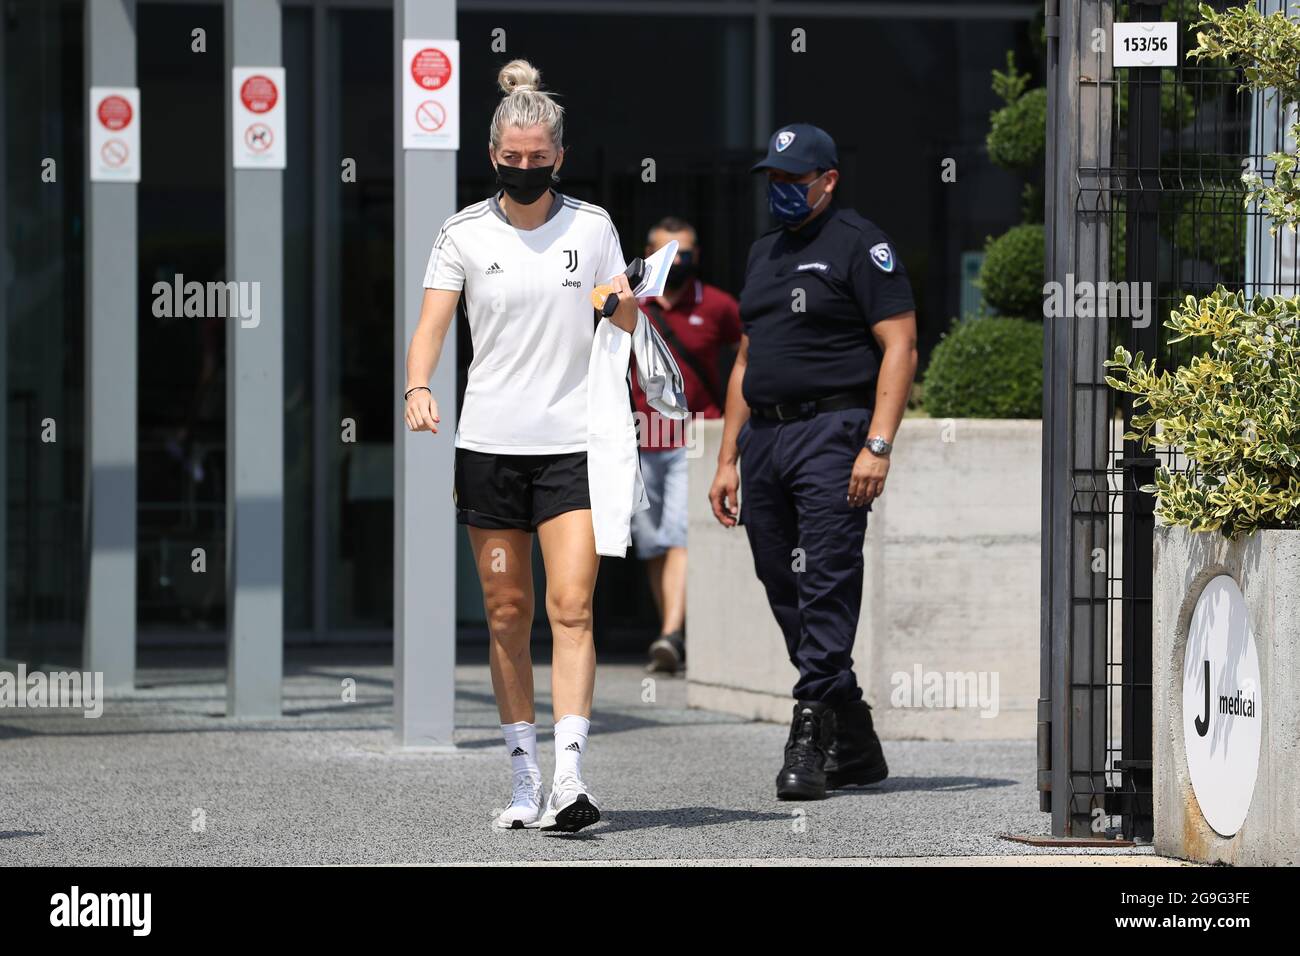 Linda Sembrant della Juventus Women lascia il J Medical Center dopo una visita medica, Torino. Data immagine: 25 luglio 2021. L'immagine di credito dovrebbe essere: Jonathan Moscop/Sportimage Foto Stock